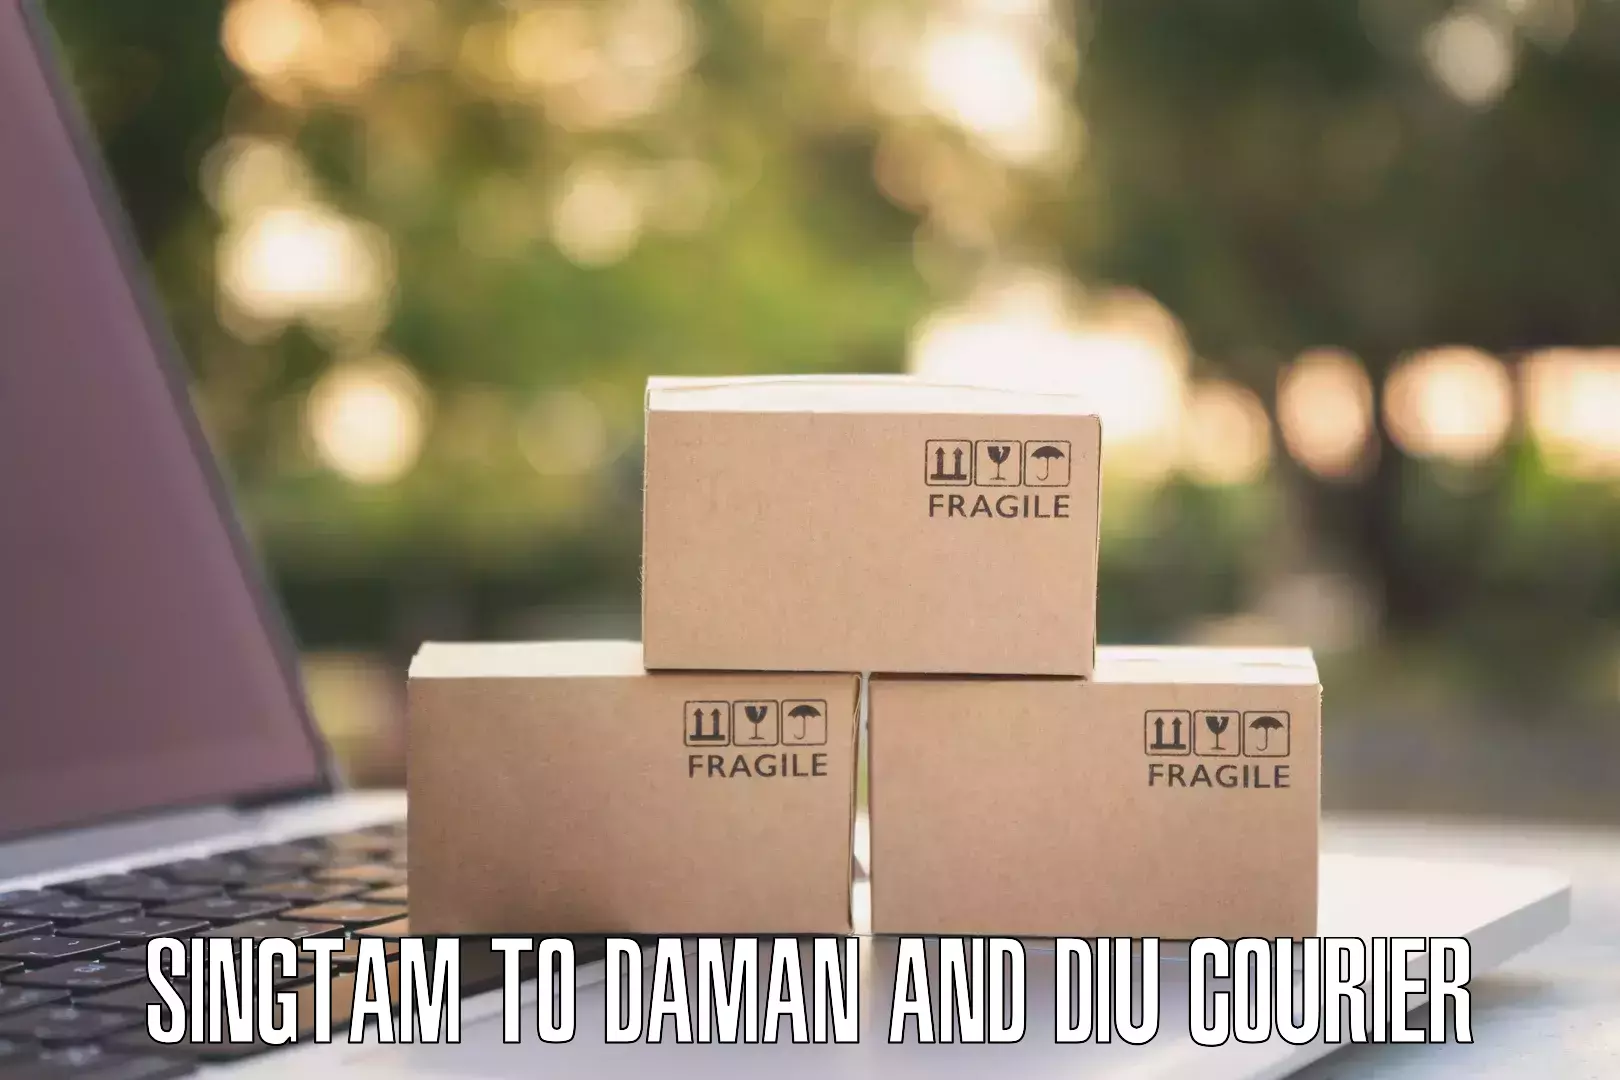 Next day courier Singtam to Daman and Diu